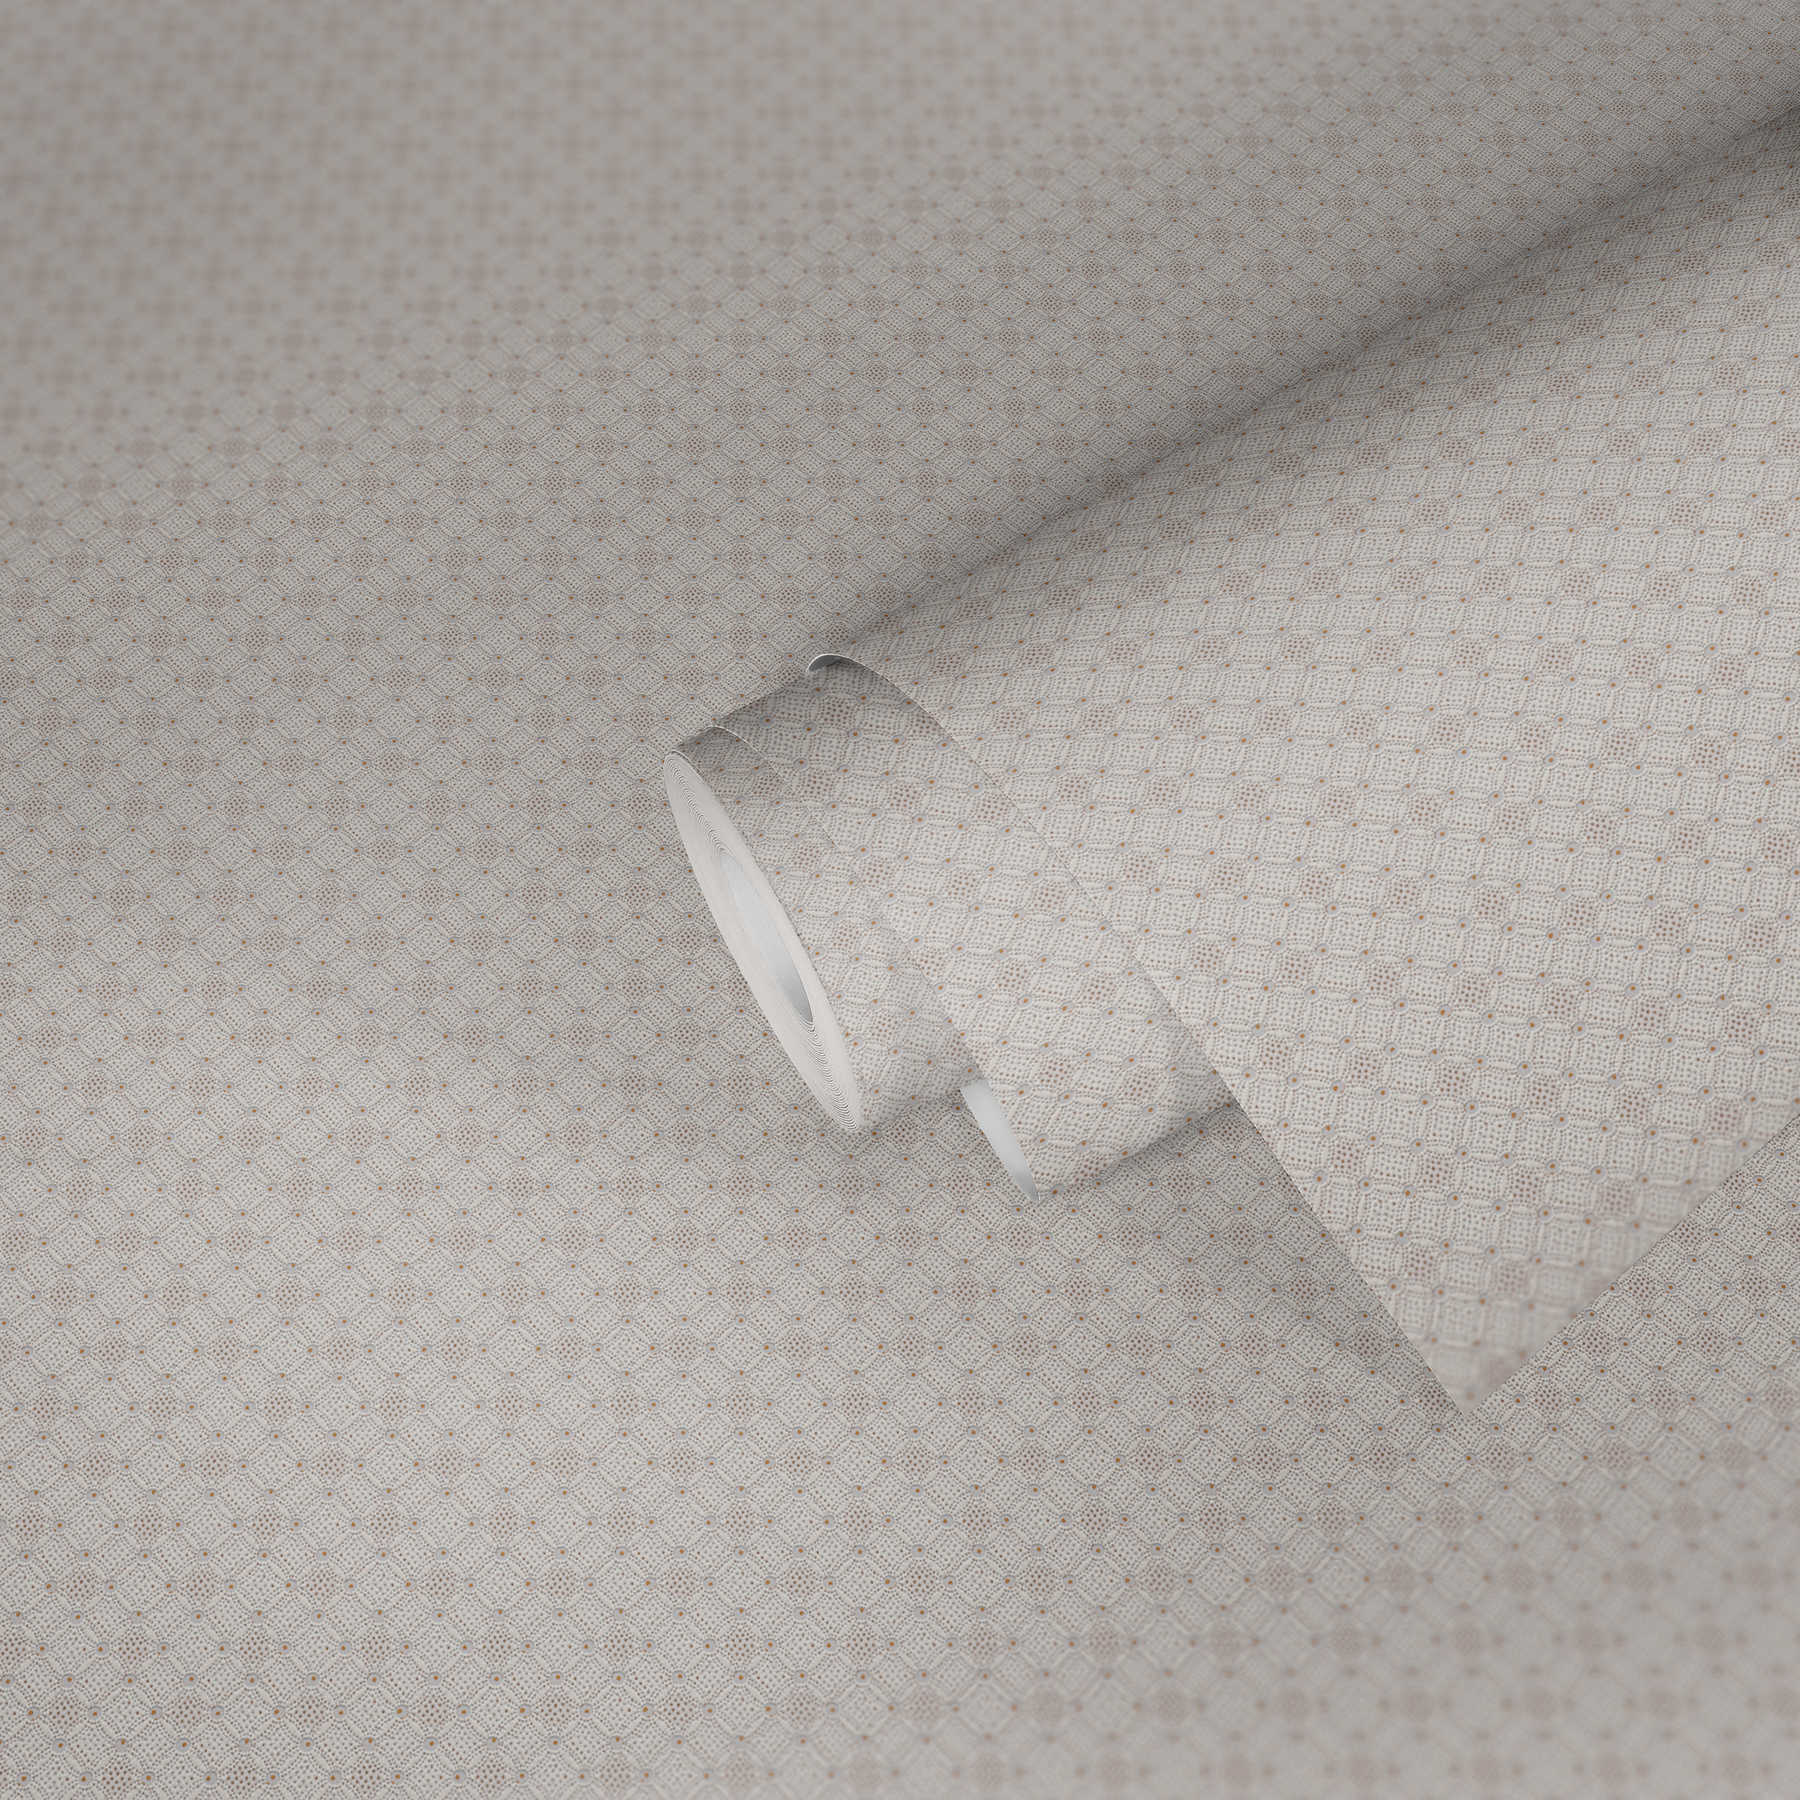             Structuurbehang met ruit- en puntpatroon - crème, wit, grijs
        